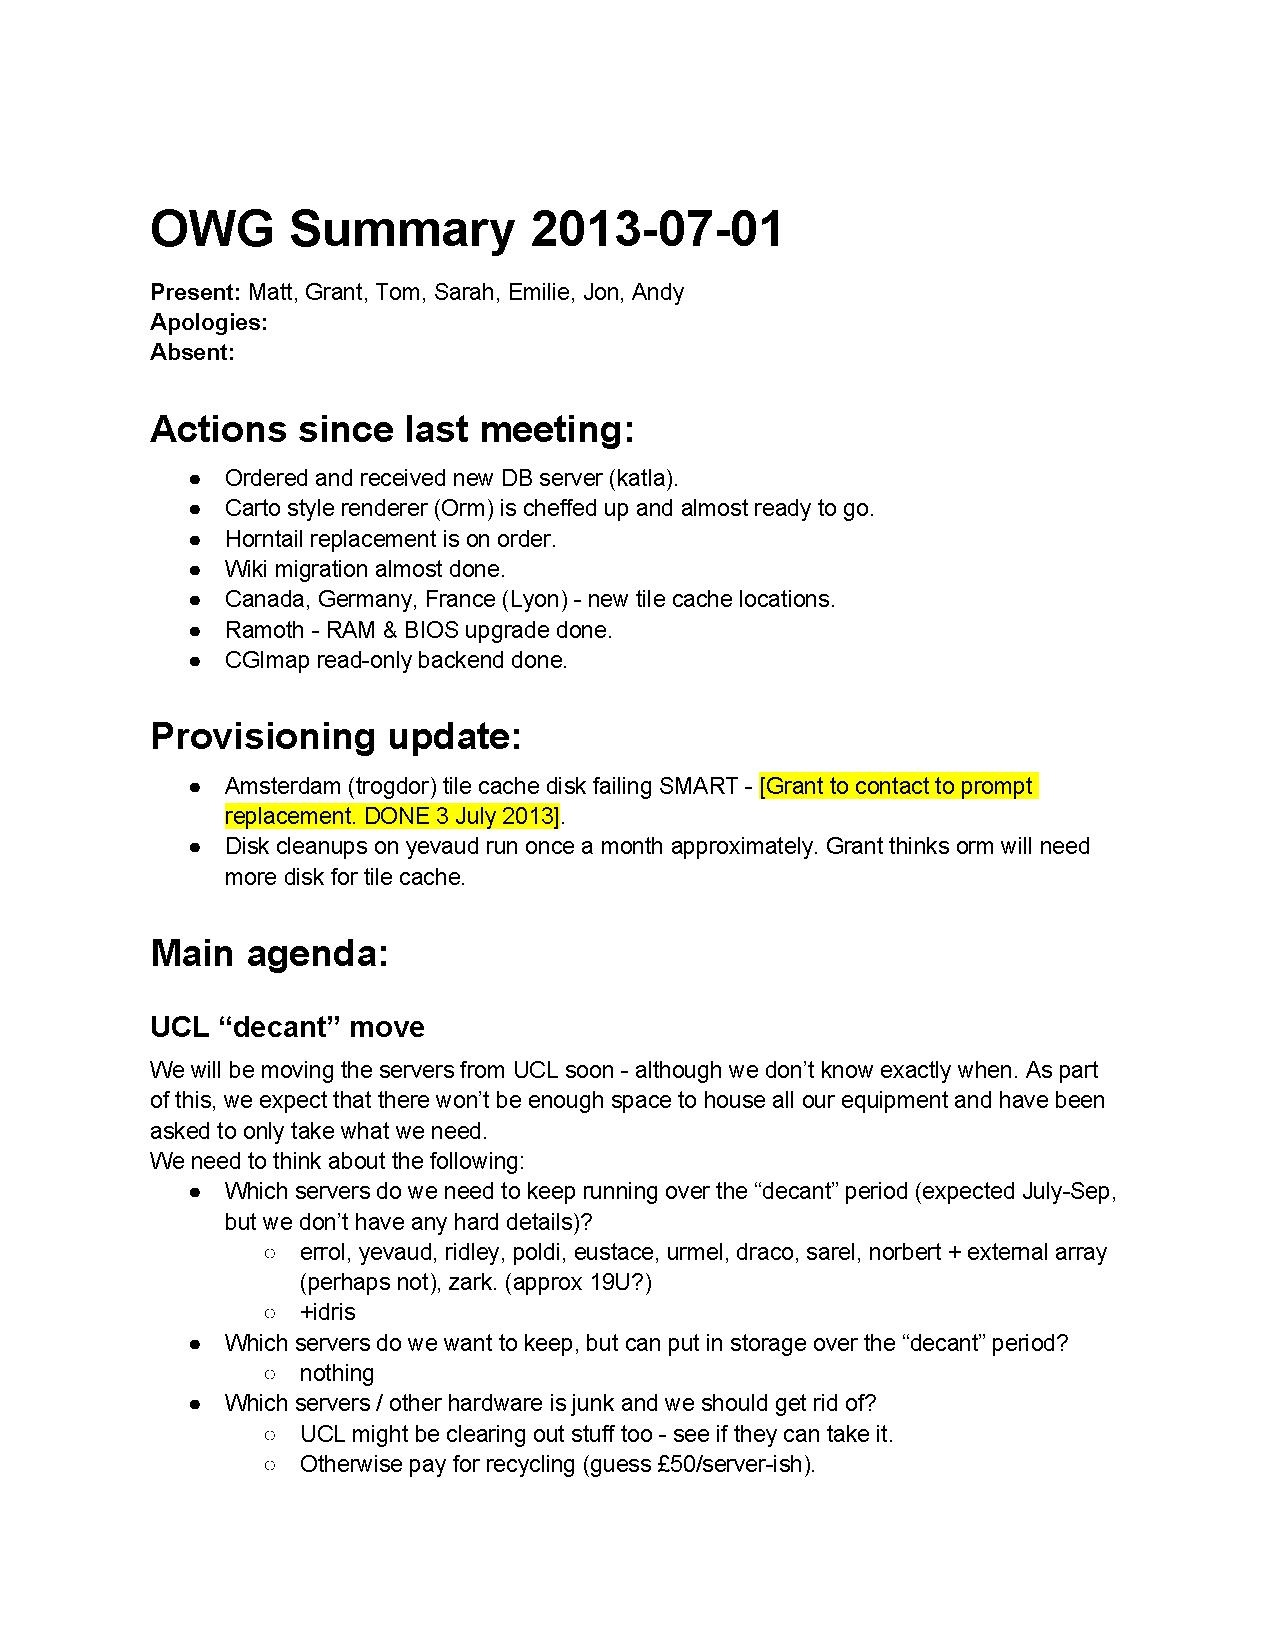 OWG Summary 2013-07-01.pdf